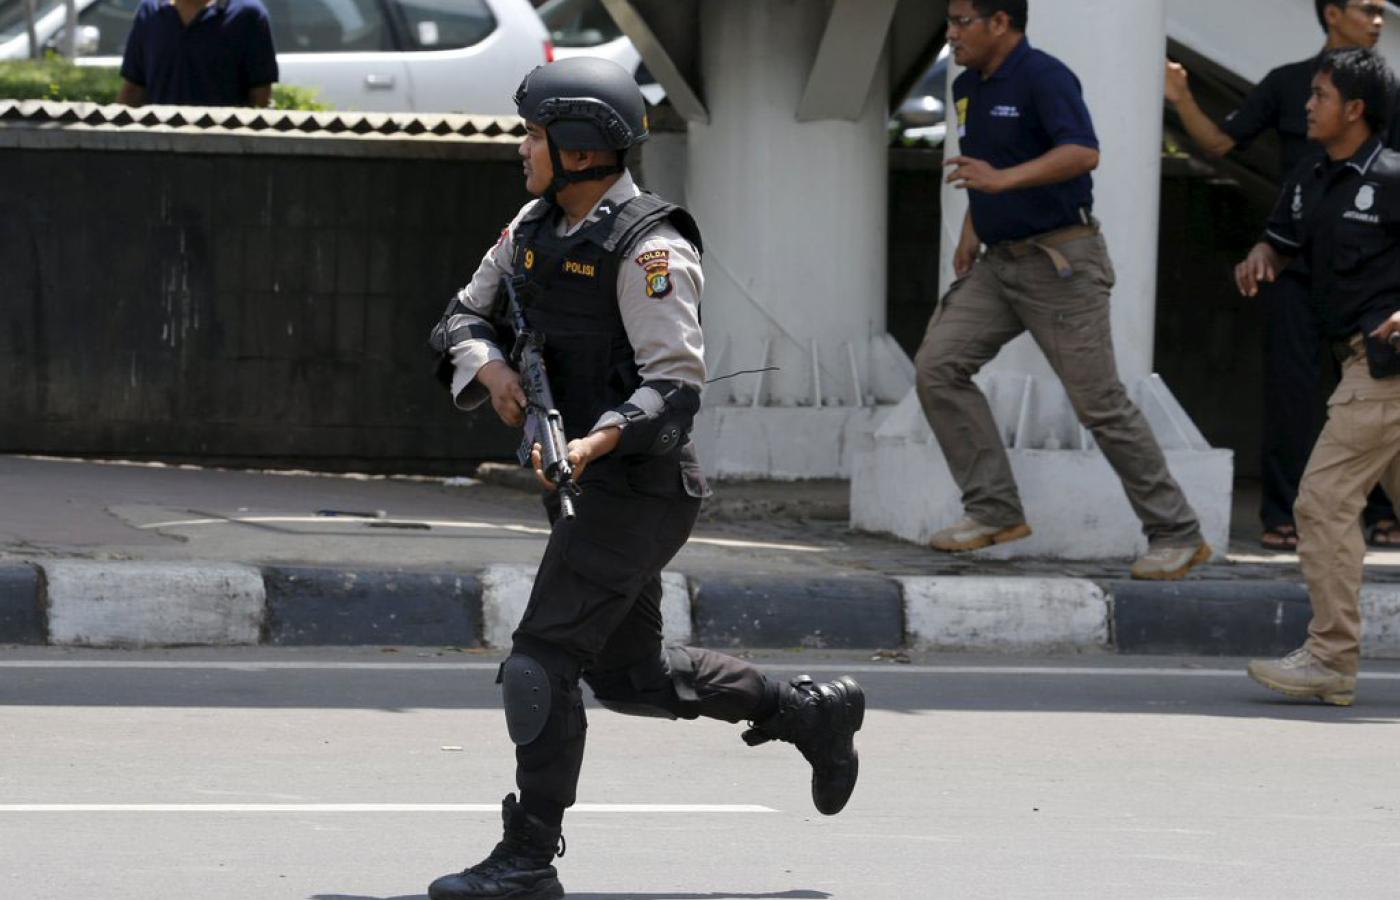 Indonezyjska policja uważa, że za zamachem terrorystycznym w Dżakarcie stoją powiązani z Daeszem (tzw. Państwem Islamskim).